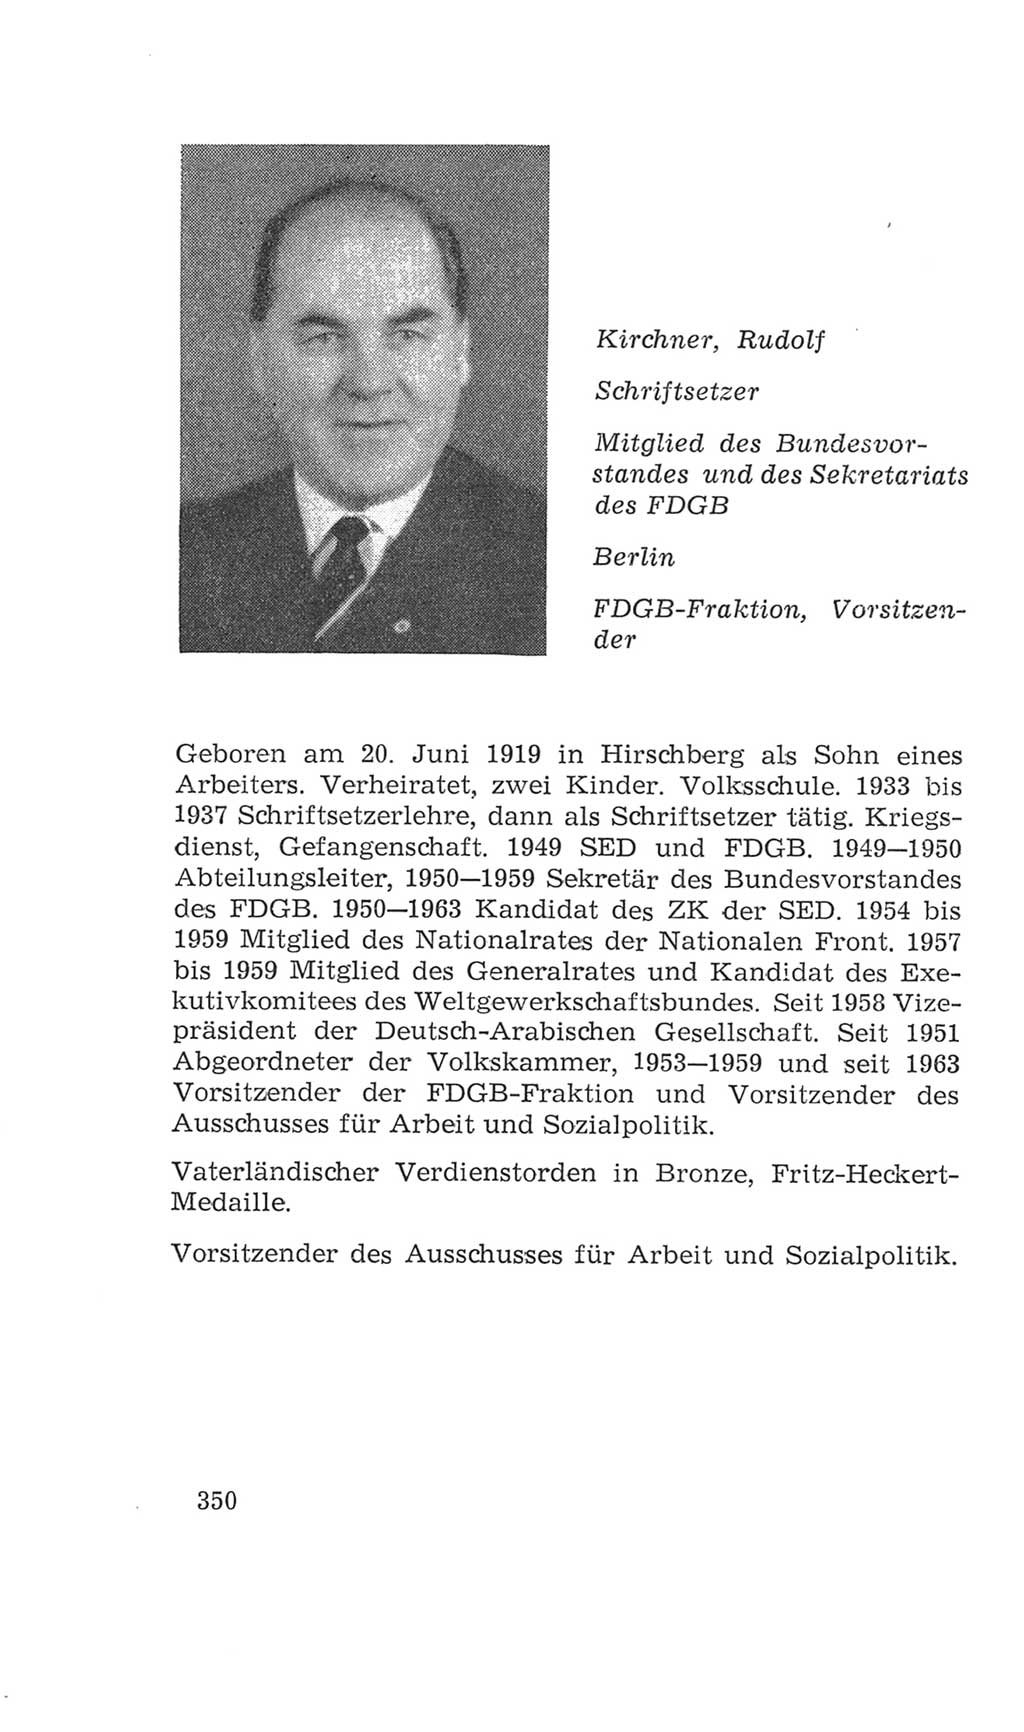 Volkskammer (VK) der Deutschen Demokratischen Republik (DDR), 4. Wahlperiode 1963-1967, Seite 350 (VK. DDR 4. WP. 1963-1967, S. 350)